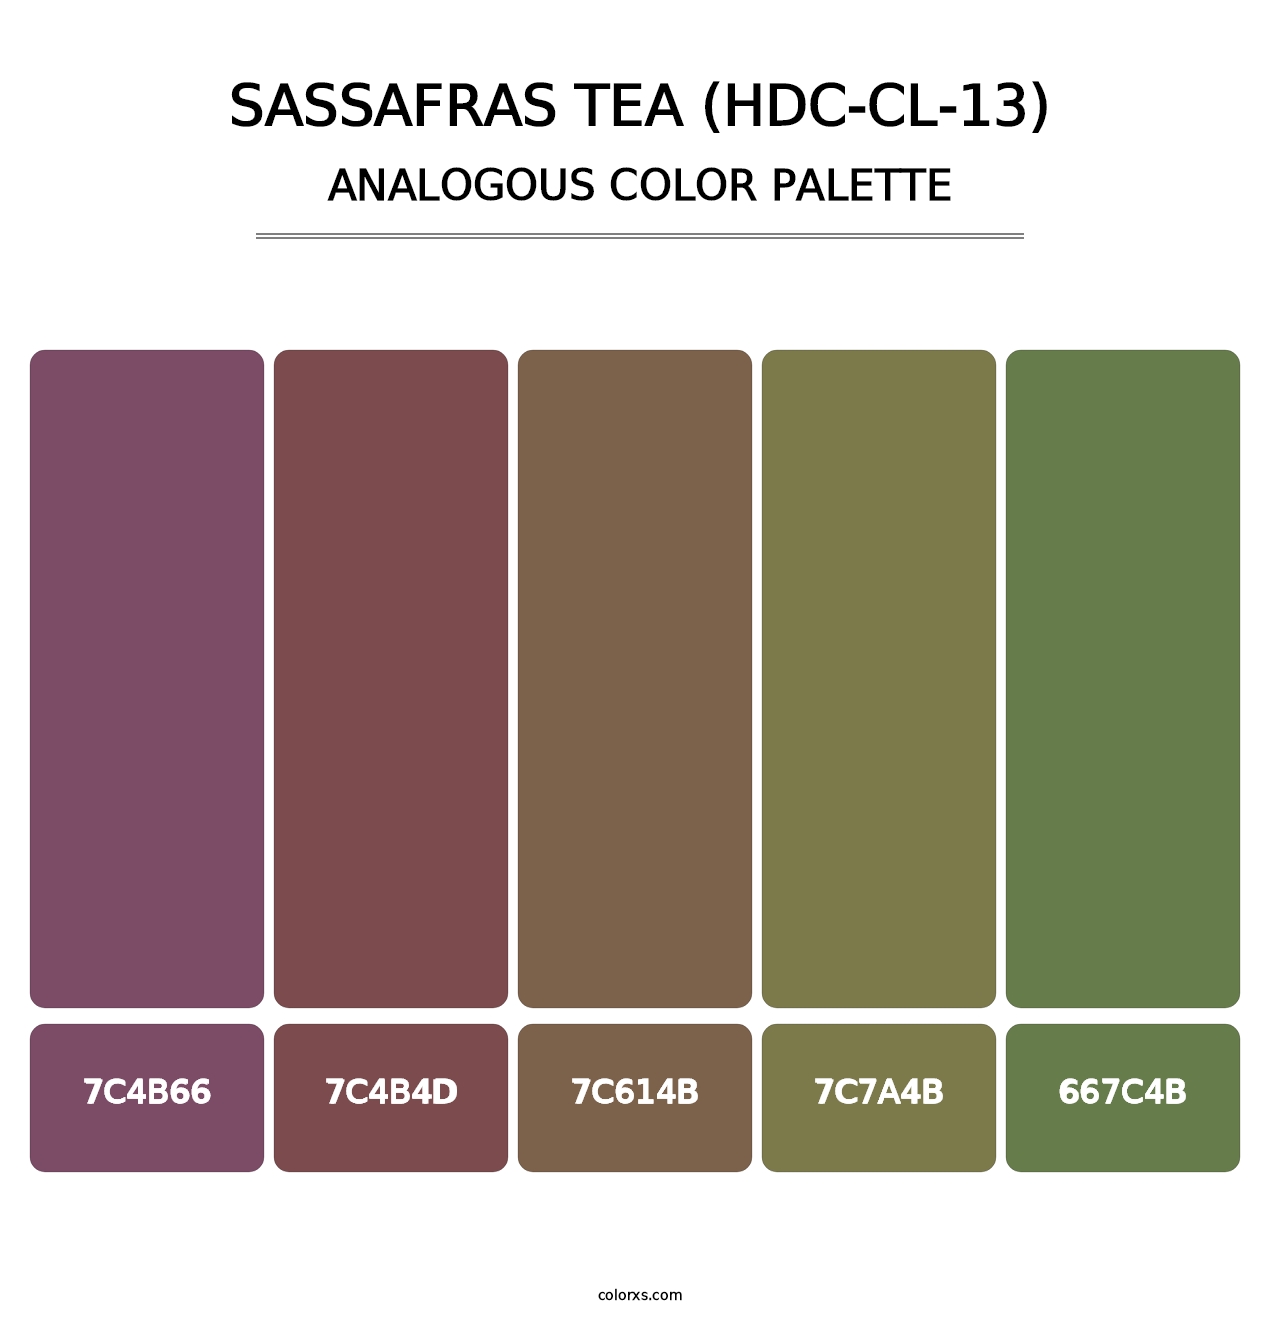 Sassafras Tea (HDC-CL-13) - Analogous Color Palette